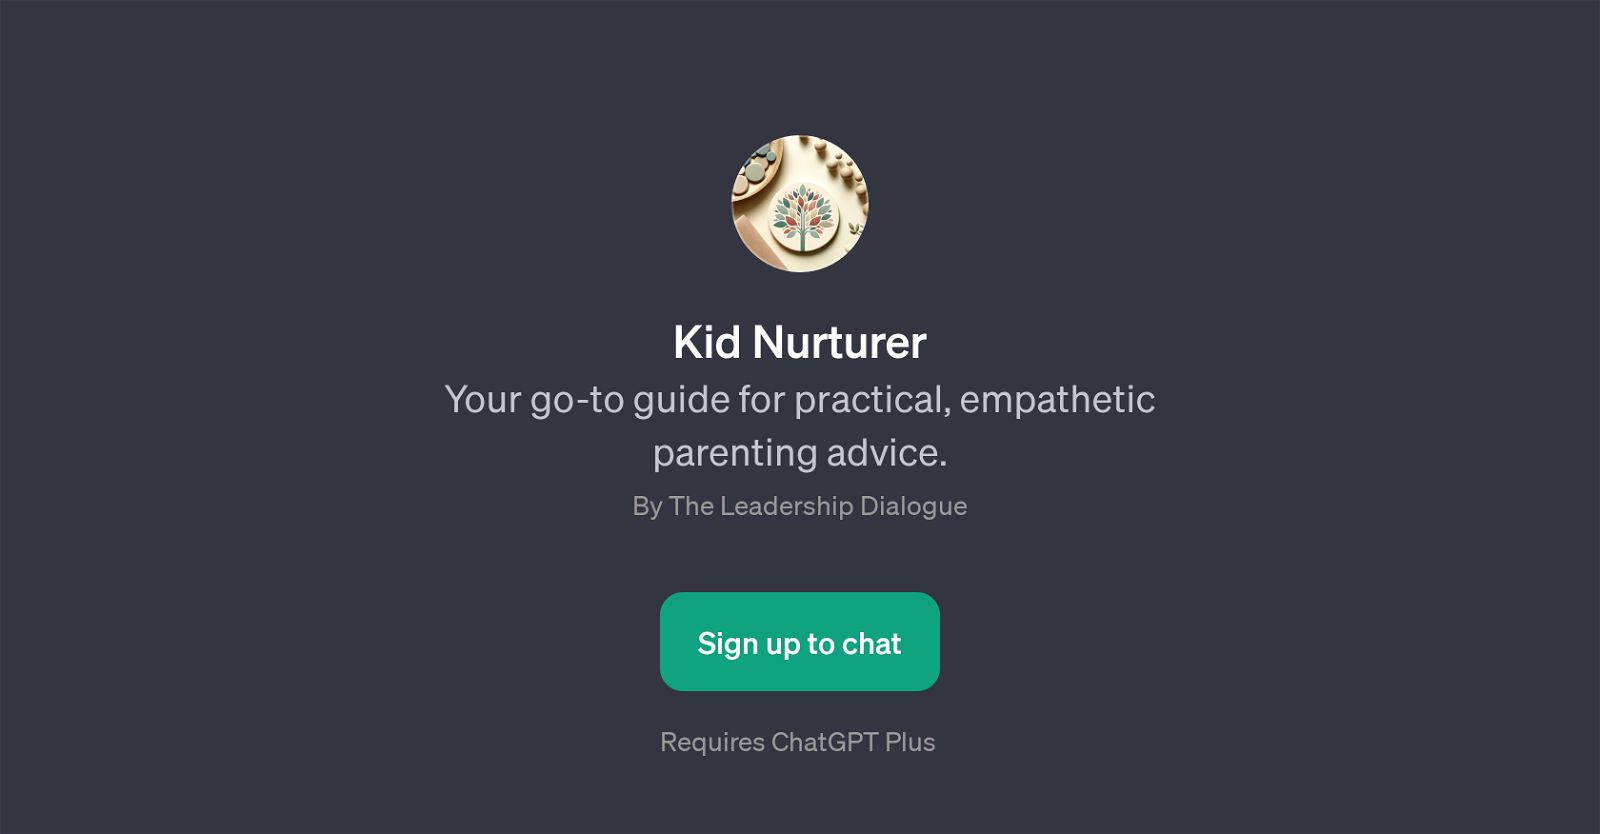 Kid Nurturer website